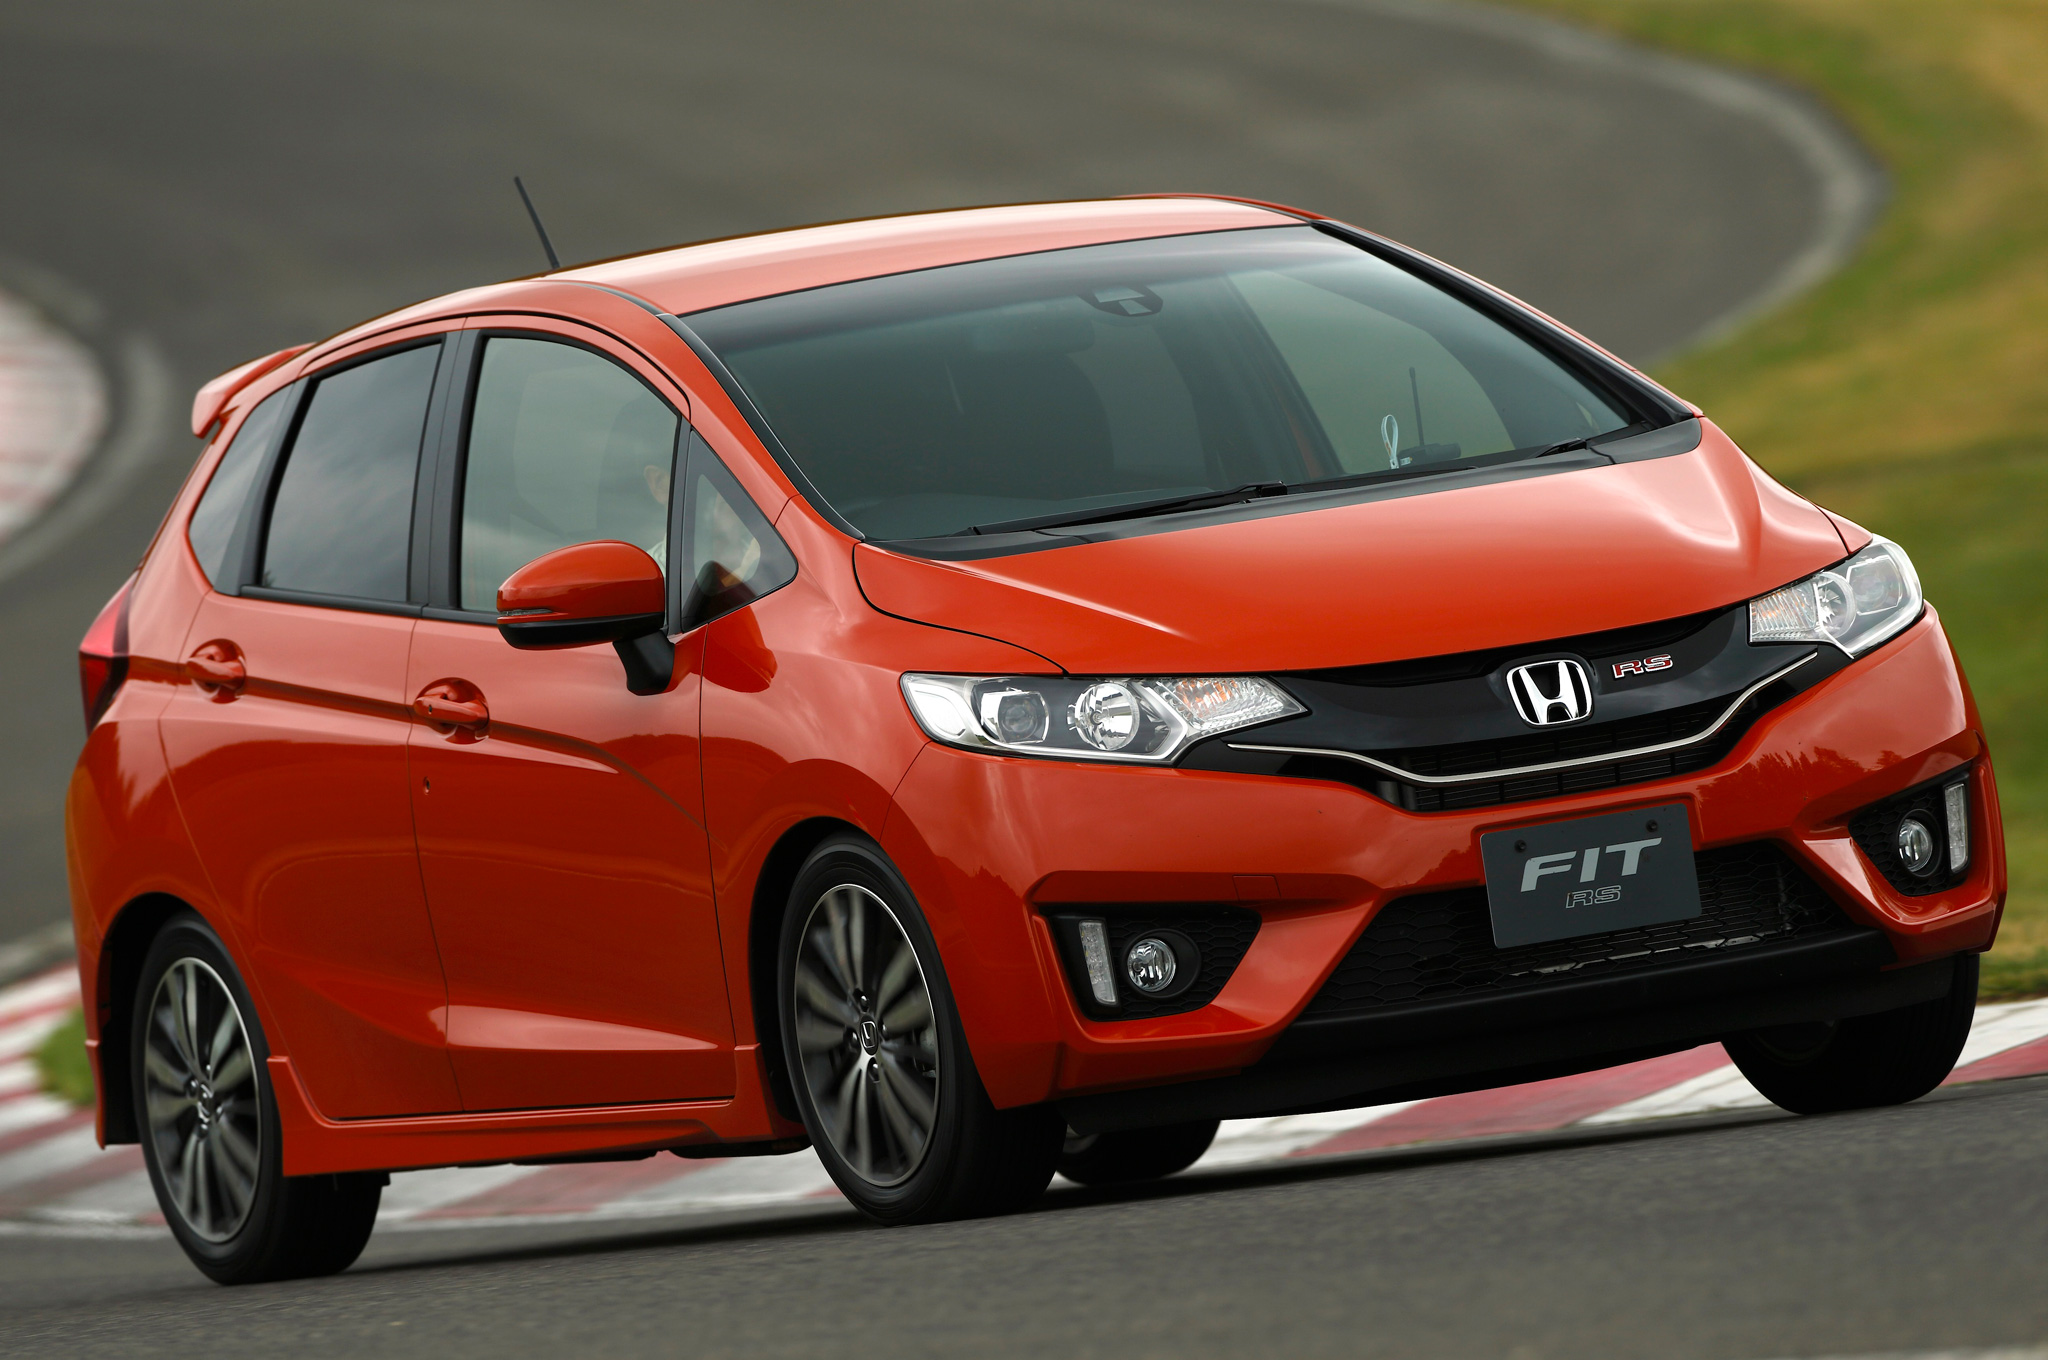 Honda Fit khoác lên mình thiết kế hoàn toàn mới trong phiên bản 2015 